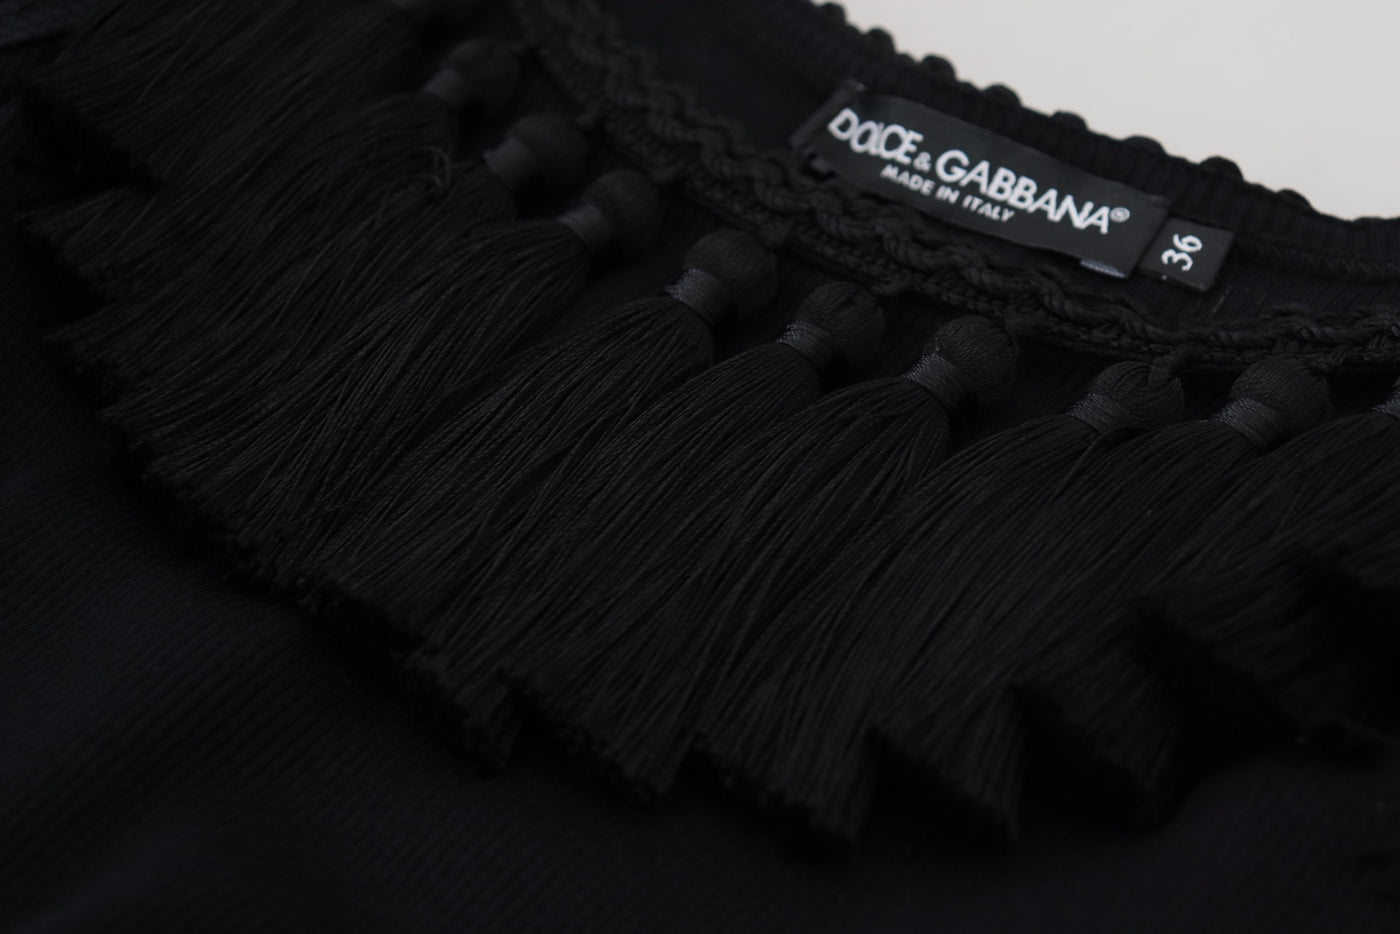 Dolce & Gabbana Black Tank Top Blouse Tassle Cotton Blouse